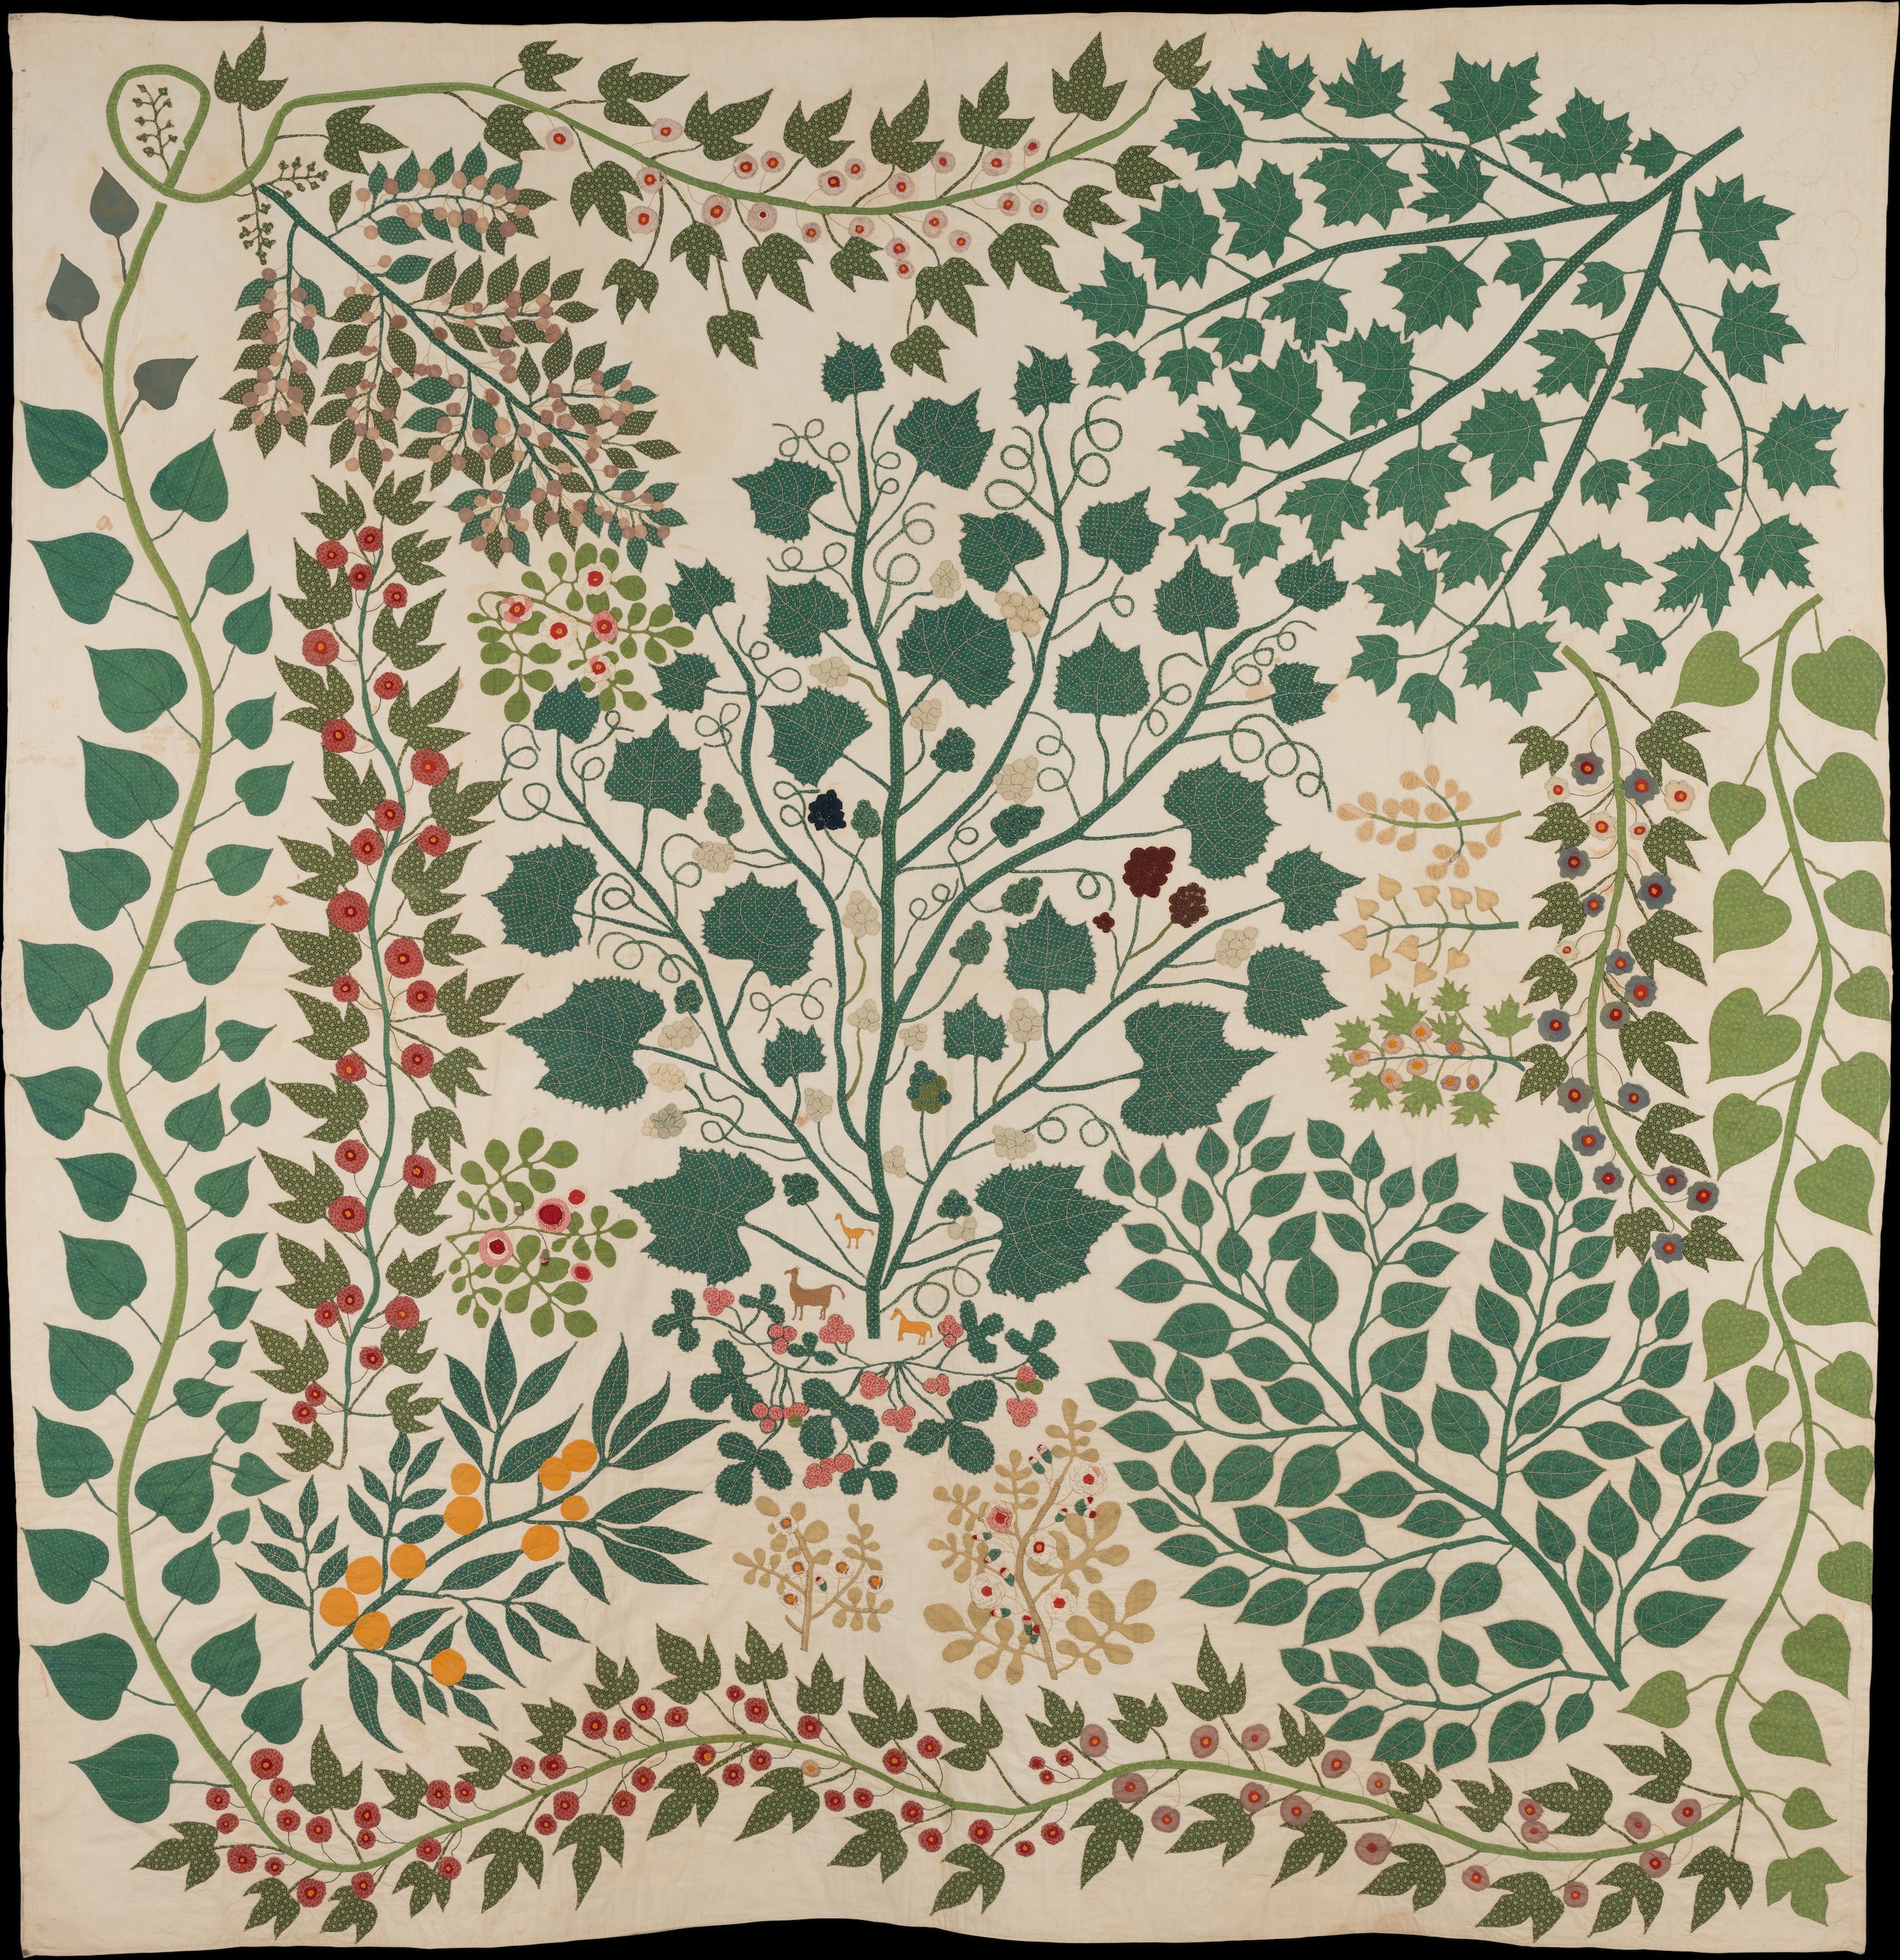 樹枝和藤蔓拼布 by Ernestine Zaumseil - 約 1875 年 - 223.5 × 218.4 釐米 